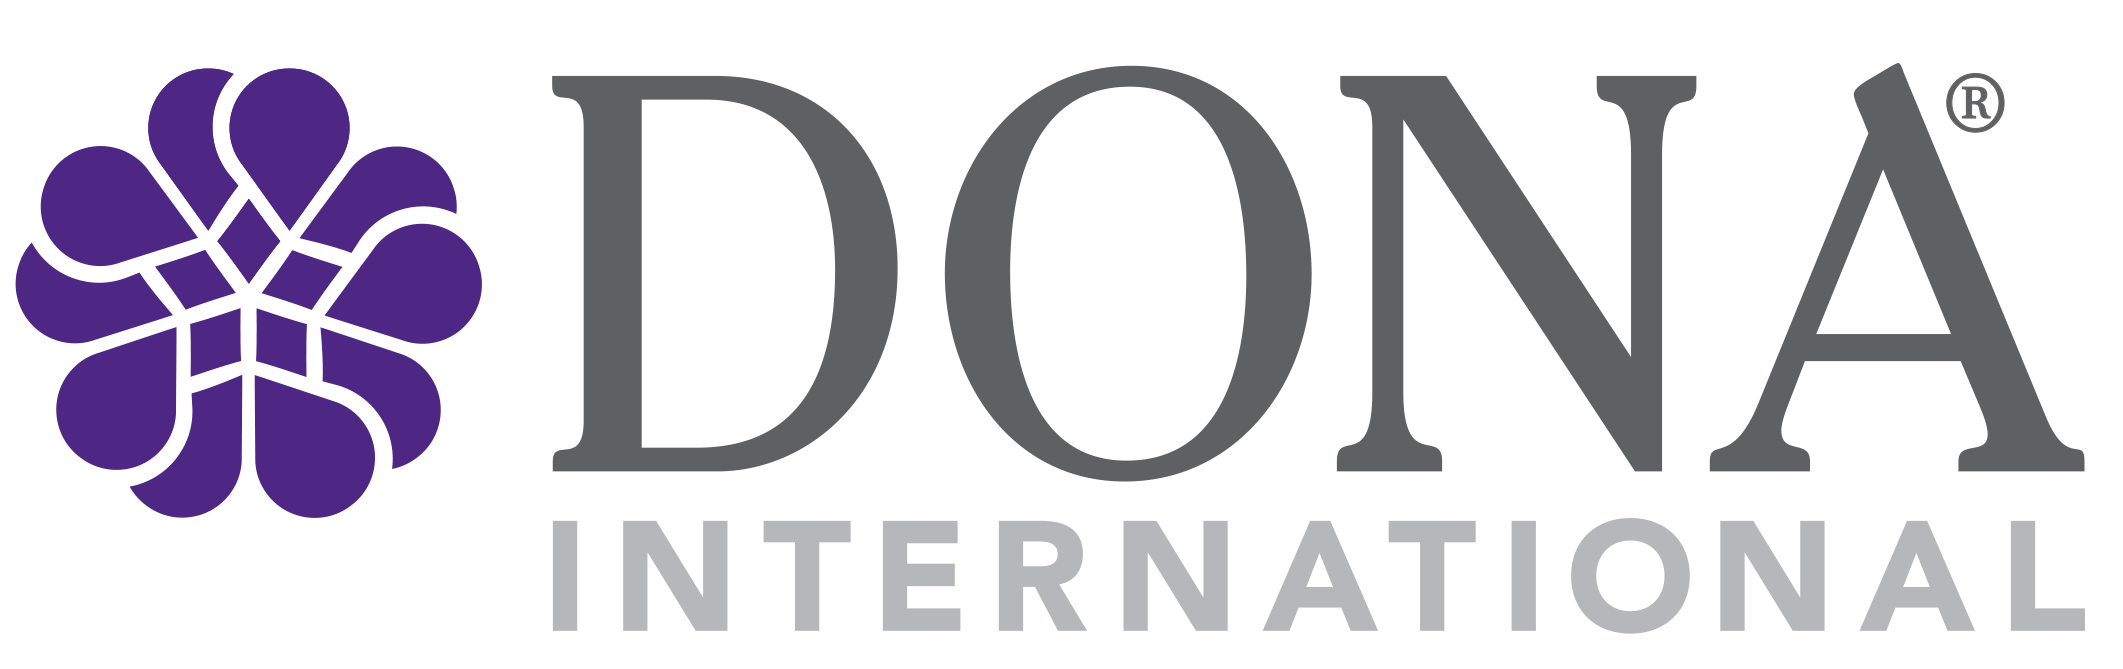 DONA Logo